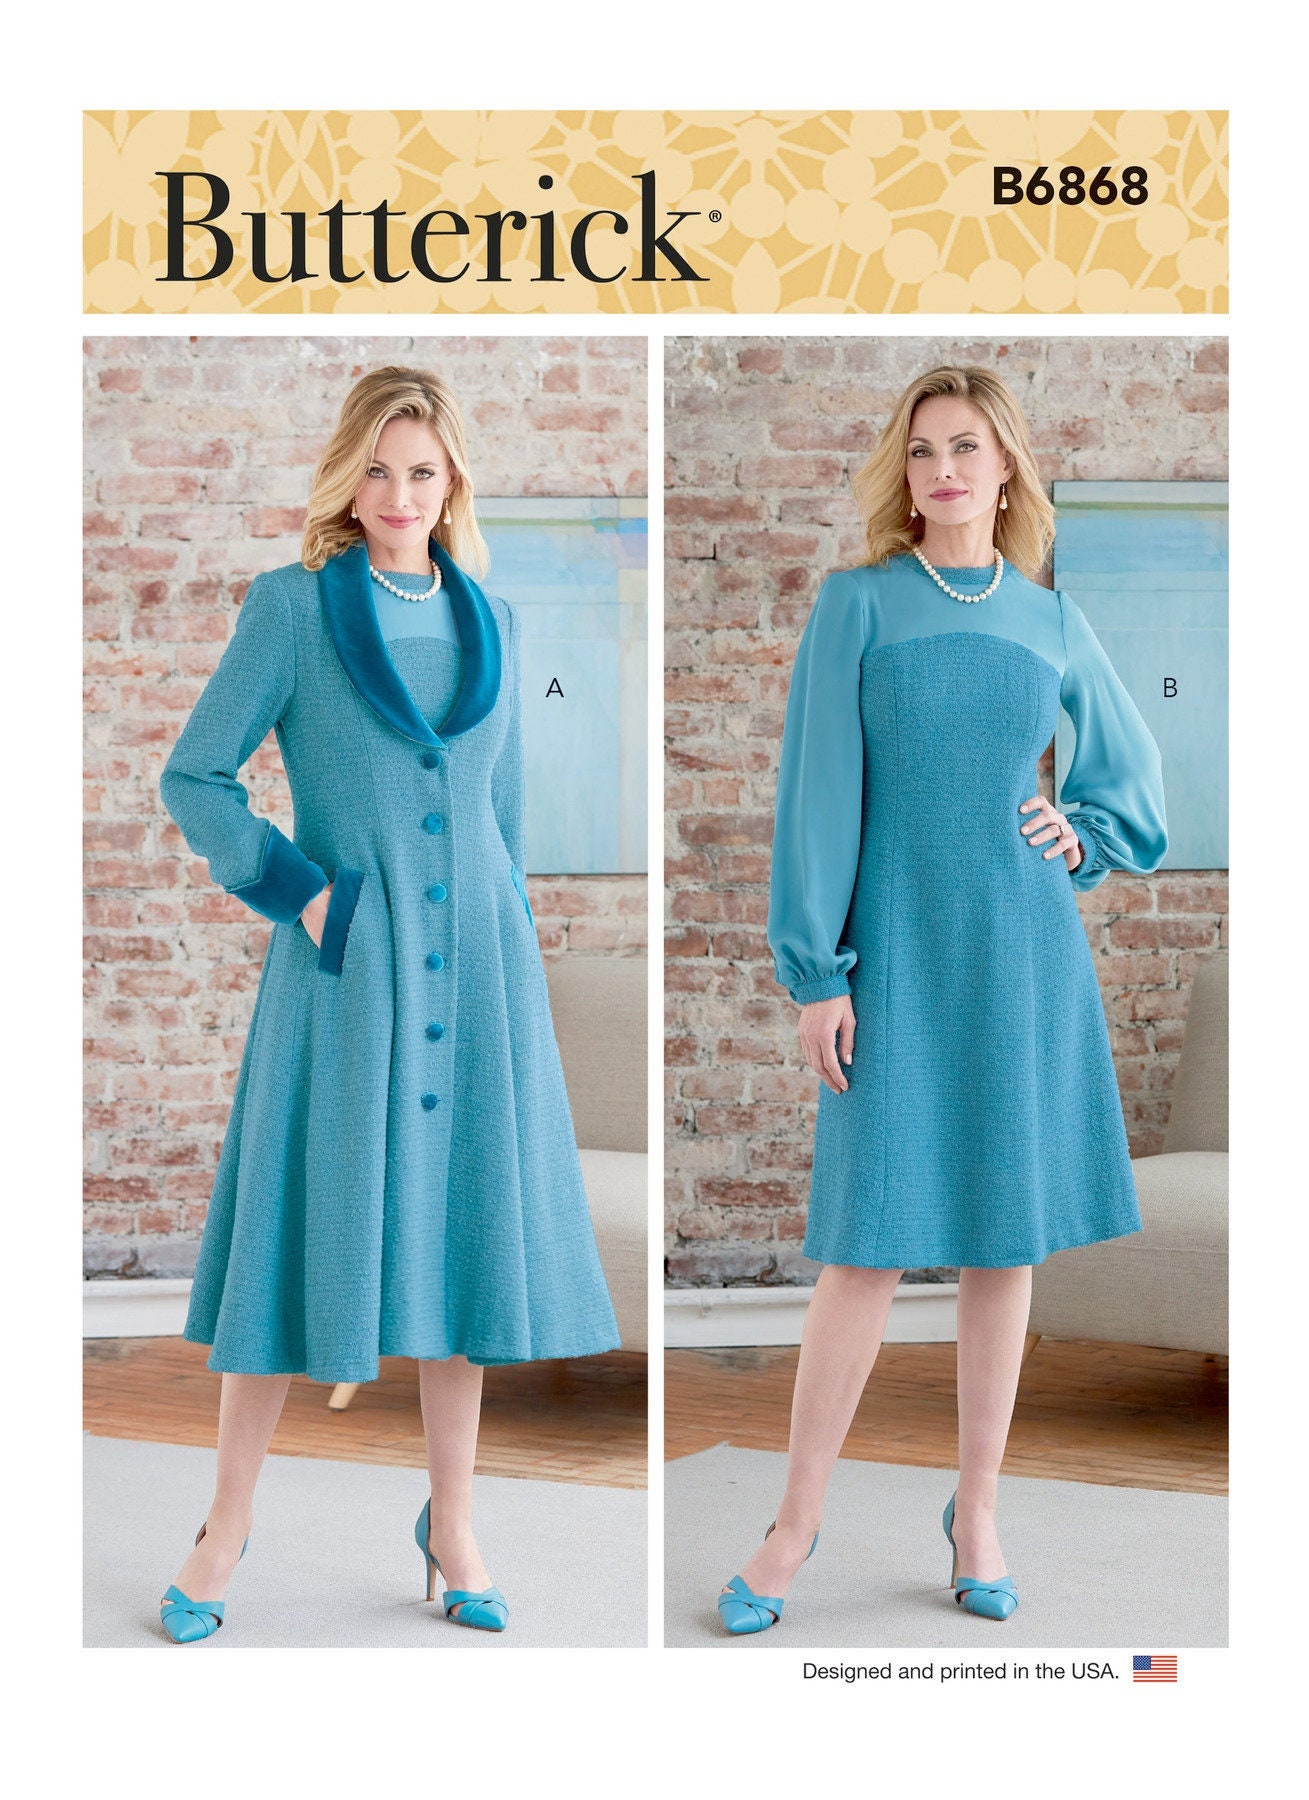 Butterick 6868 UNCUT Pattern for Misses' Coat & Dress - Etsy